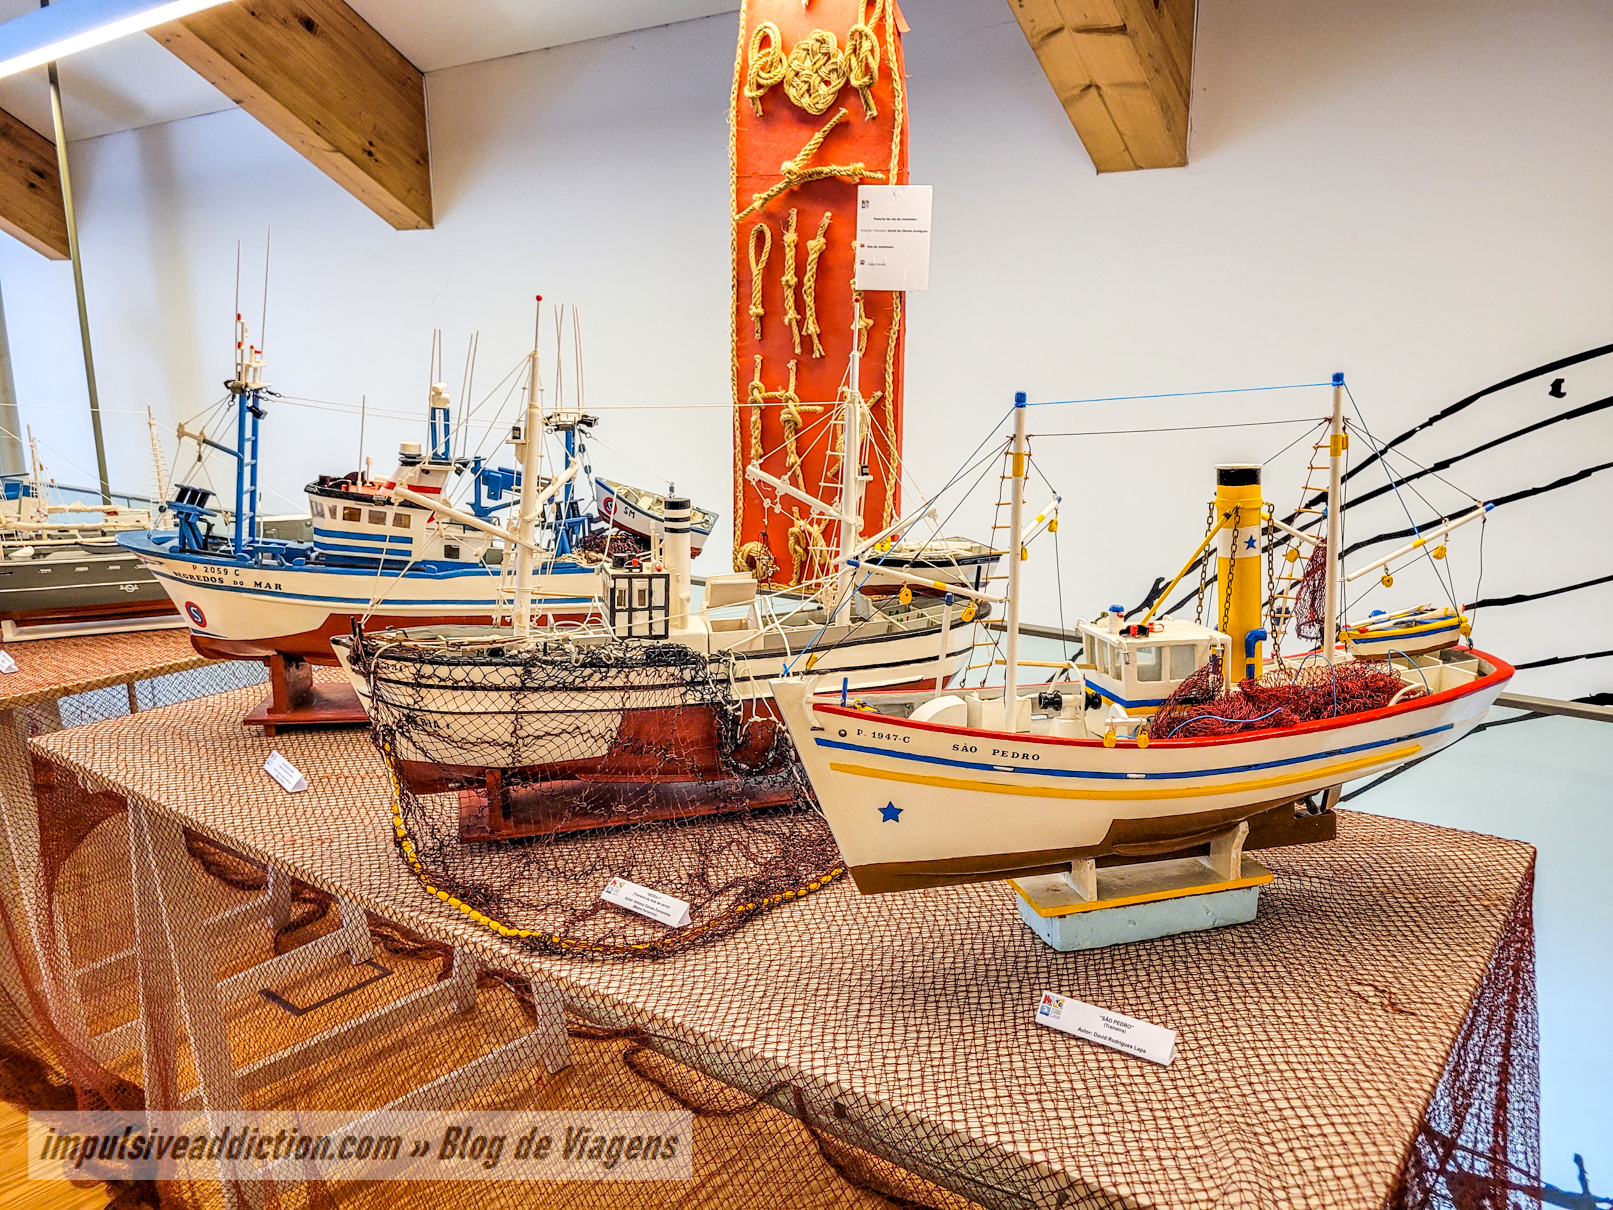 Miniaturas de Navios e Barcos do Centro Interpretativo da Afurada